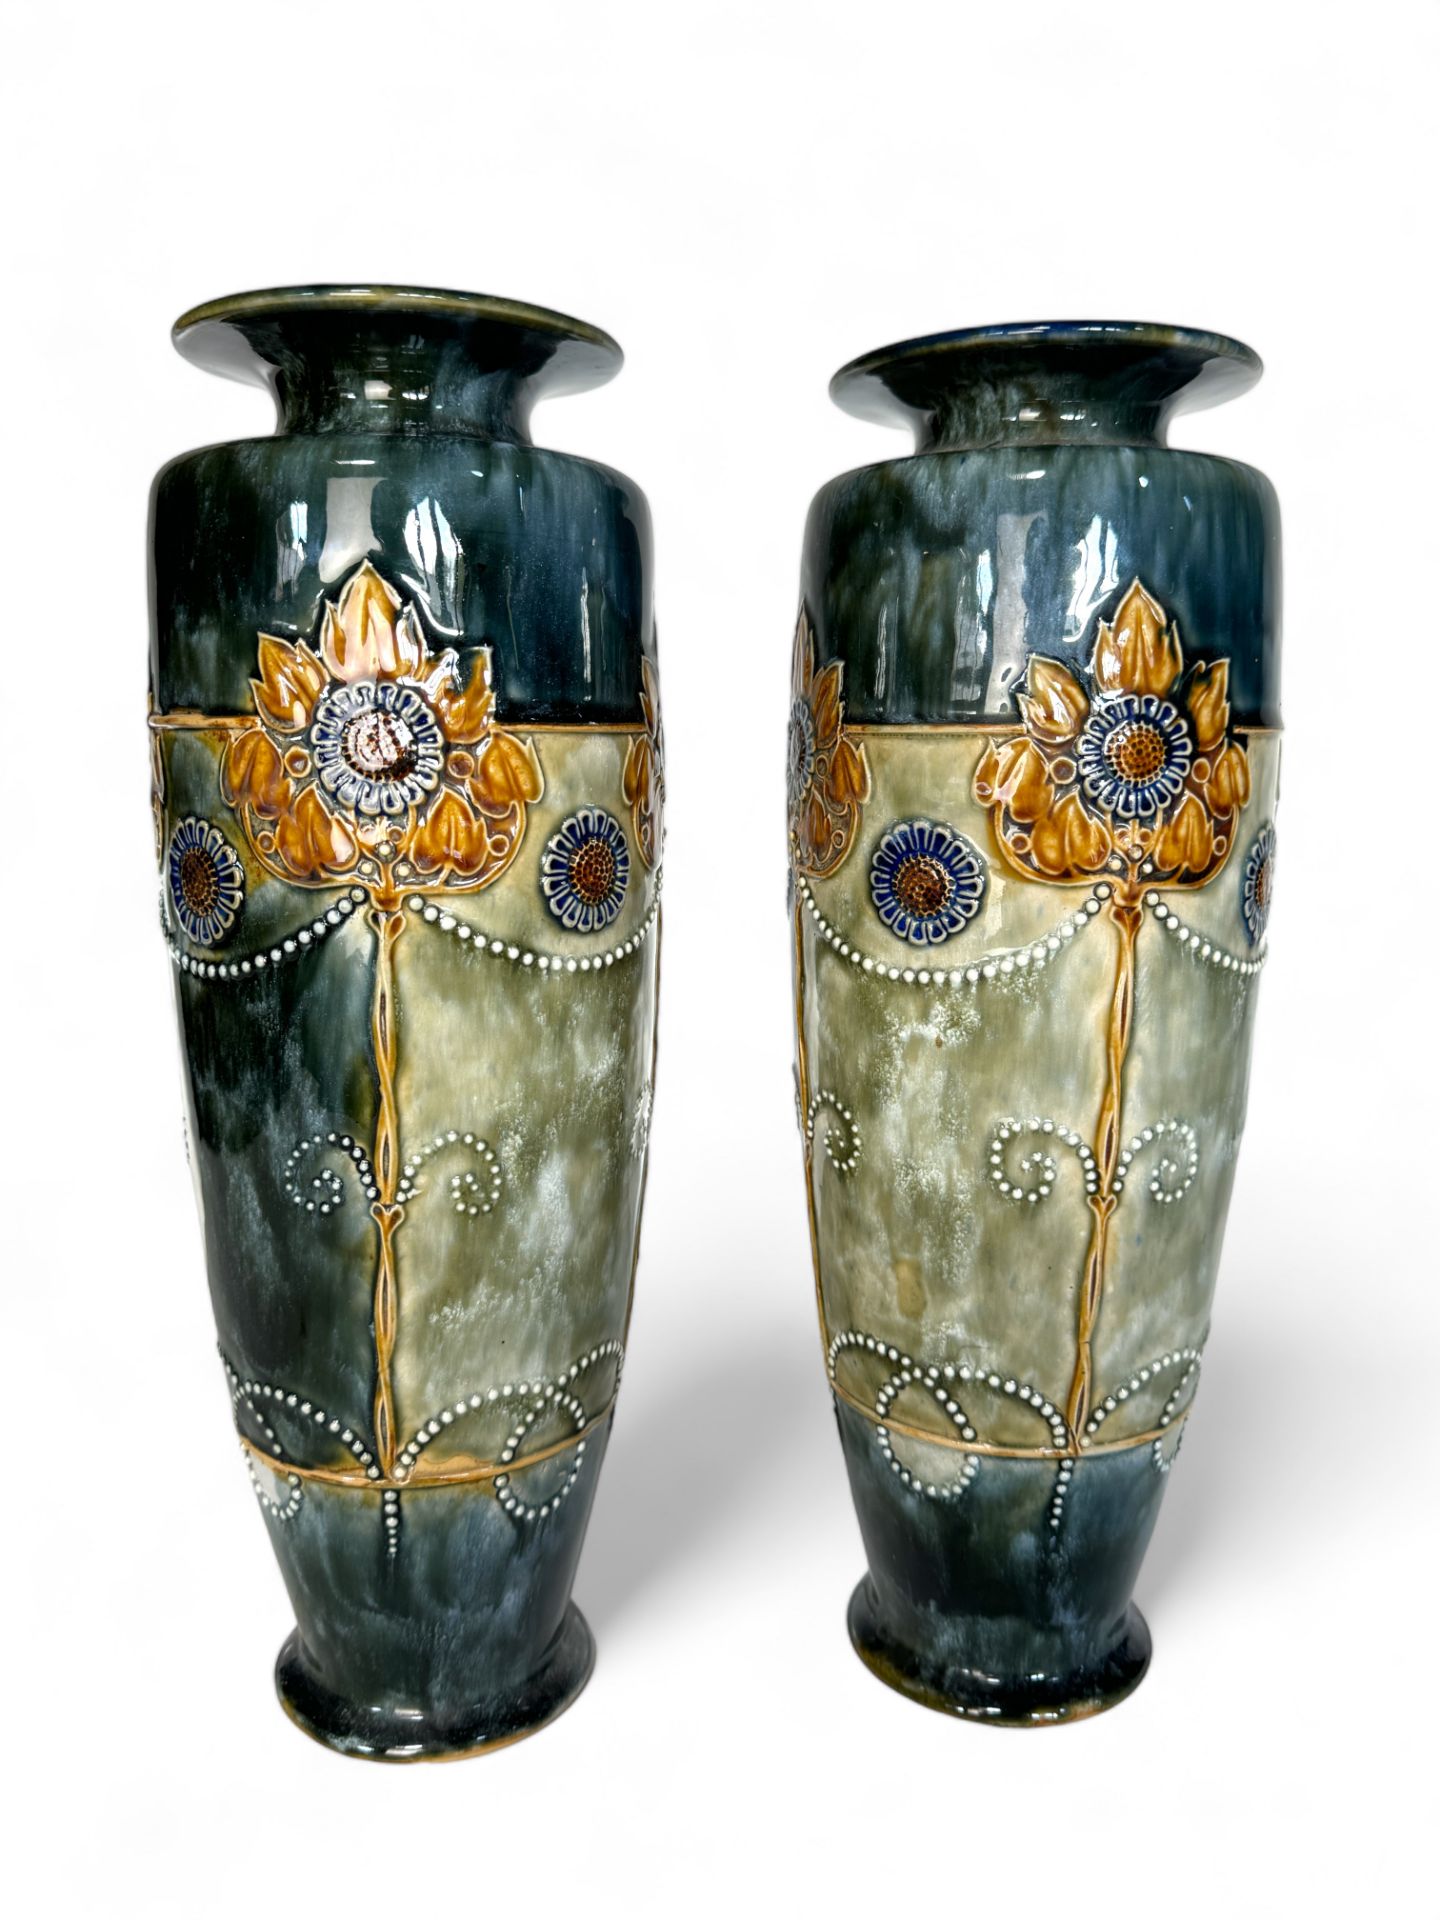 A large pair of Royal Doulton Art Nouveau style vases, circa 1900